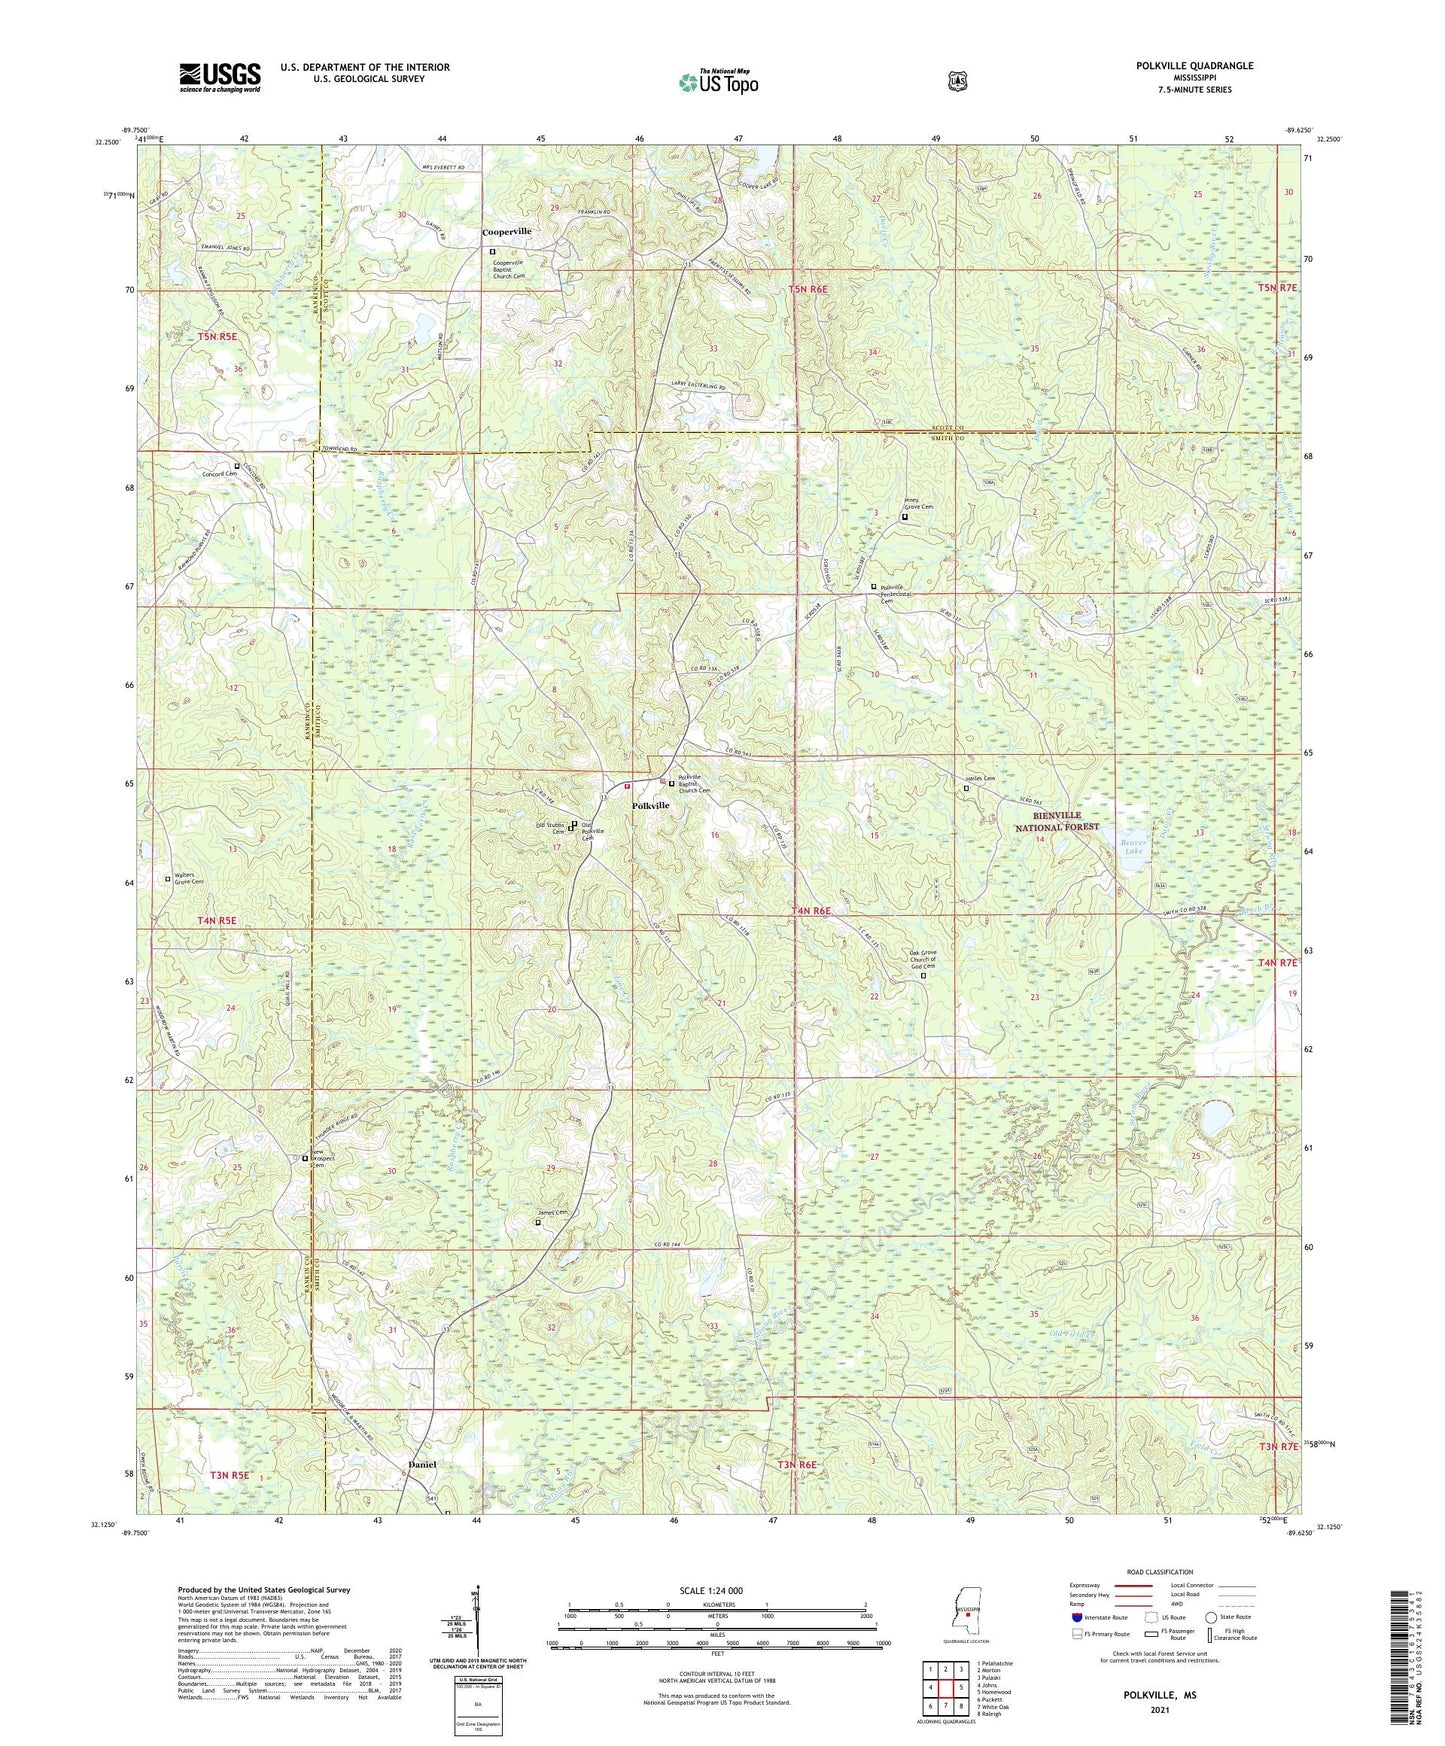 Polkville Mississippi US Topo Map Image